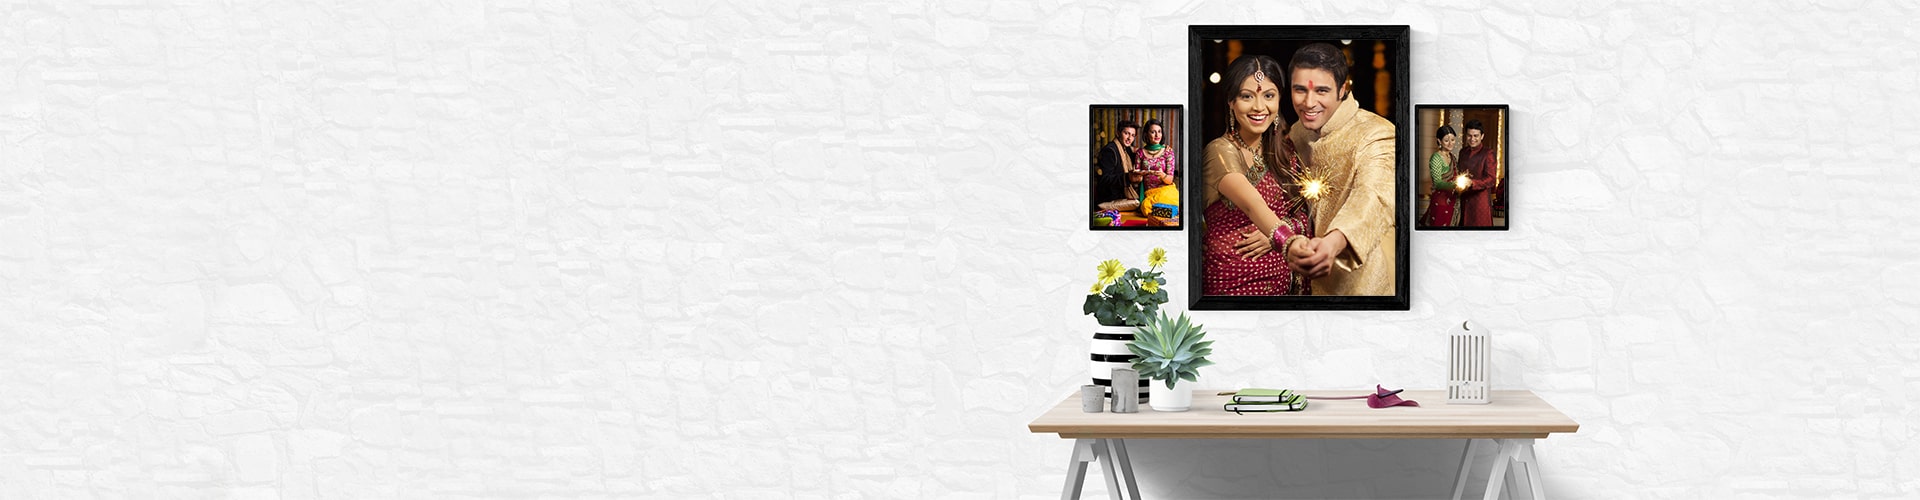 Framed Prints - Create Custom Photo Frams Online India - Frame ...